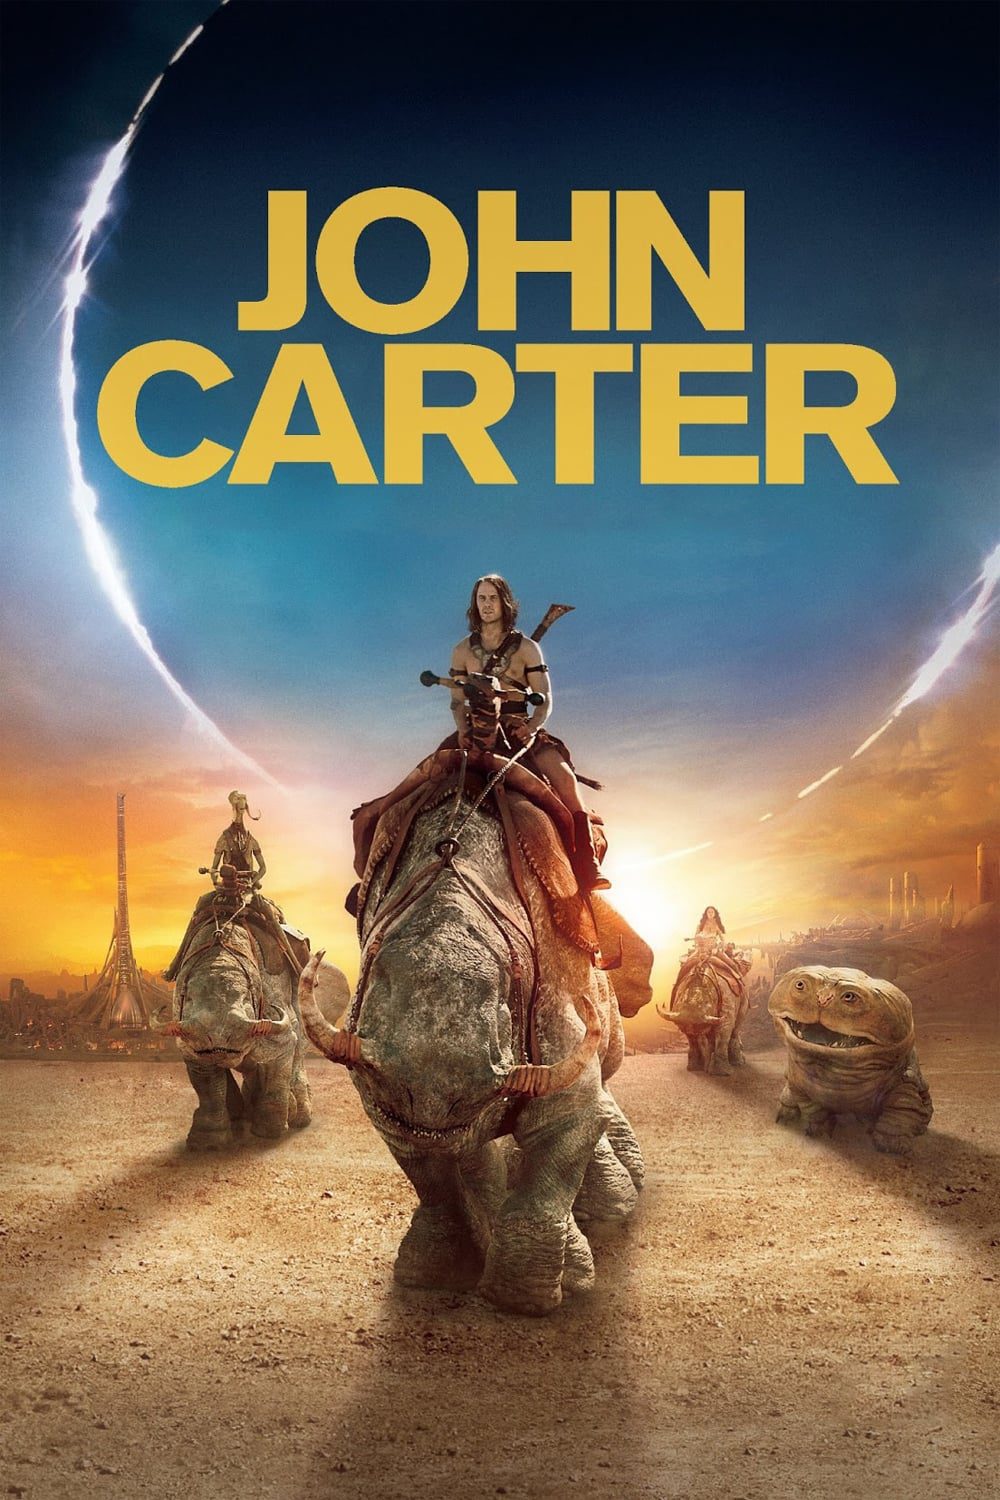 ดูหนังออนไลน์ฟรี John Carter นักรบสงครามข้ามจักรวาล